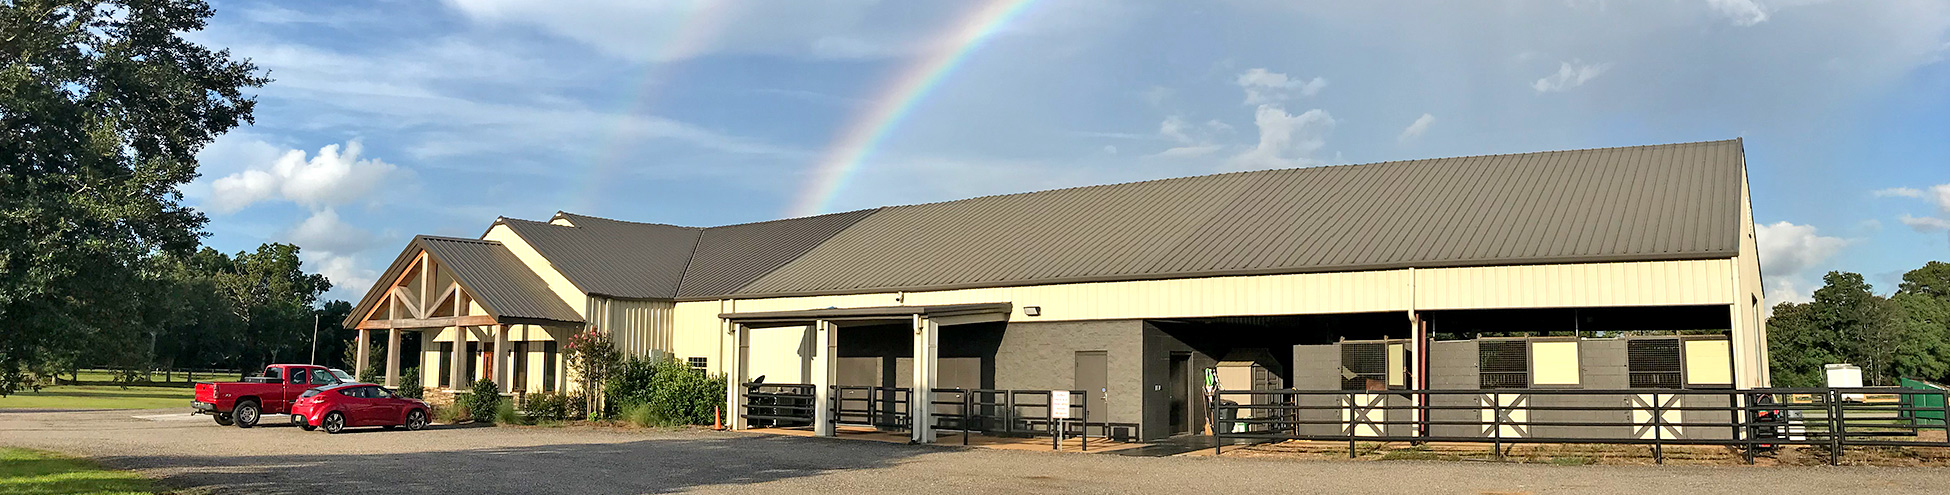 BAC Facility with a Rainbow